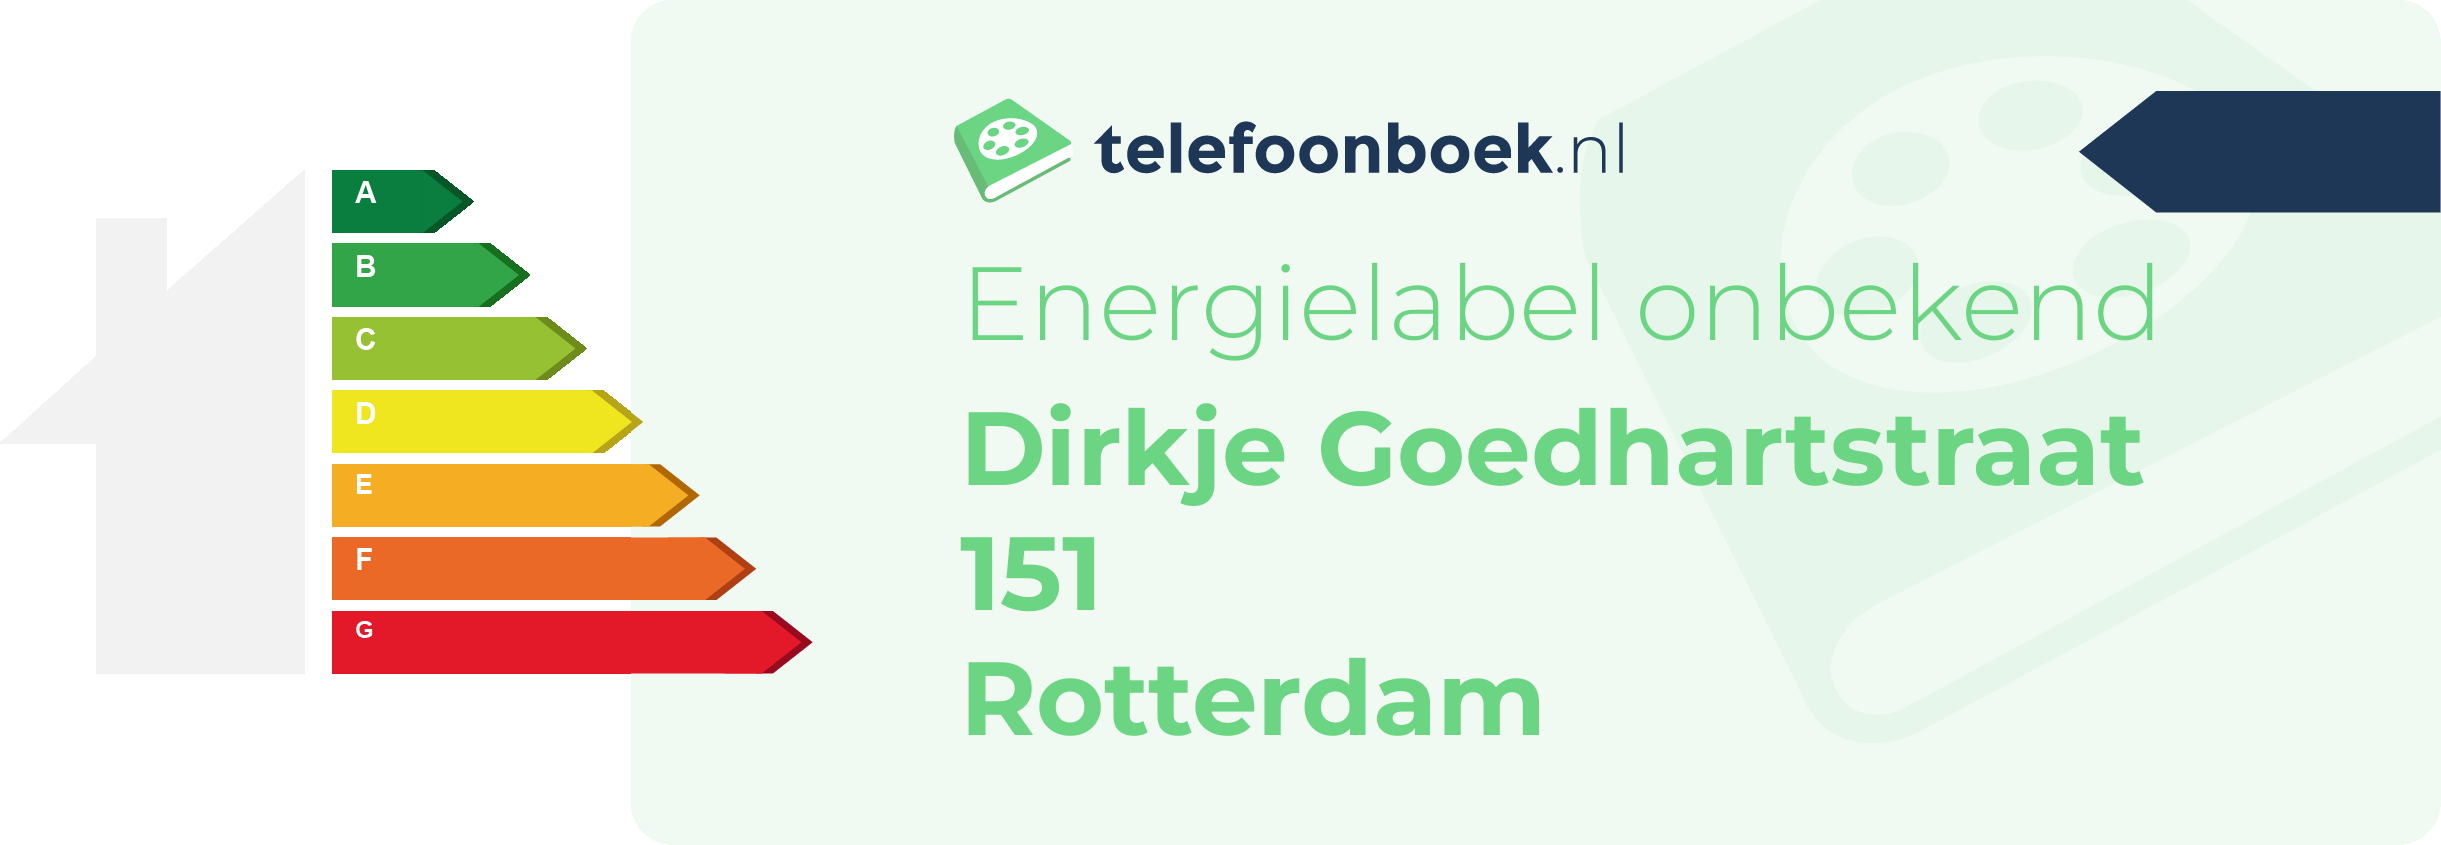 Energielabel Dirkje Goedhartstraat 151 Rotterdam